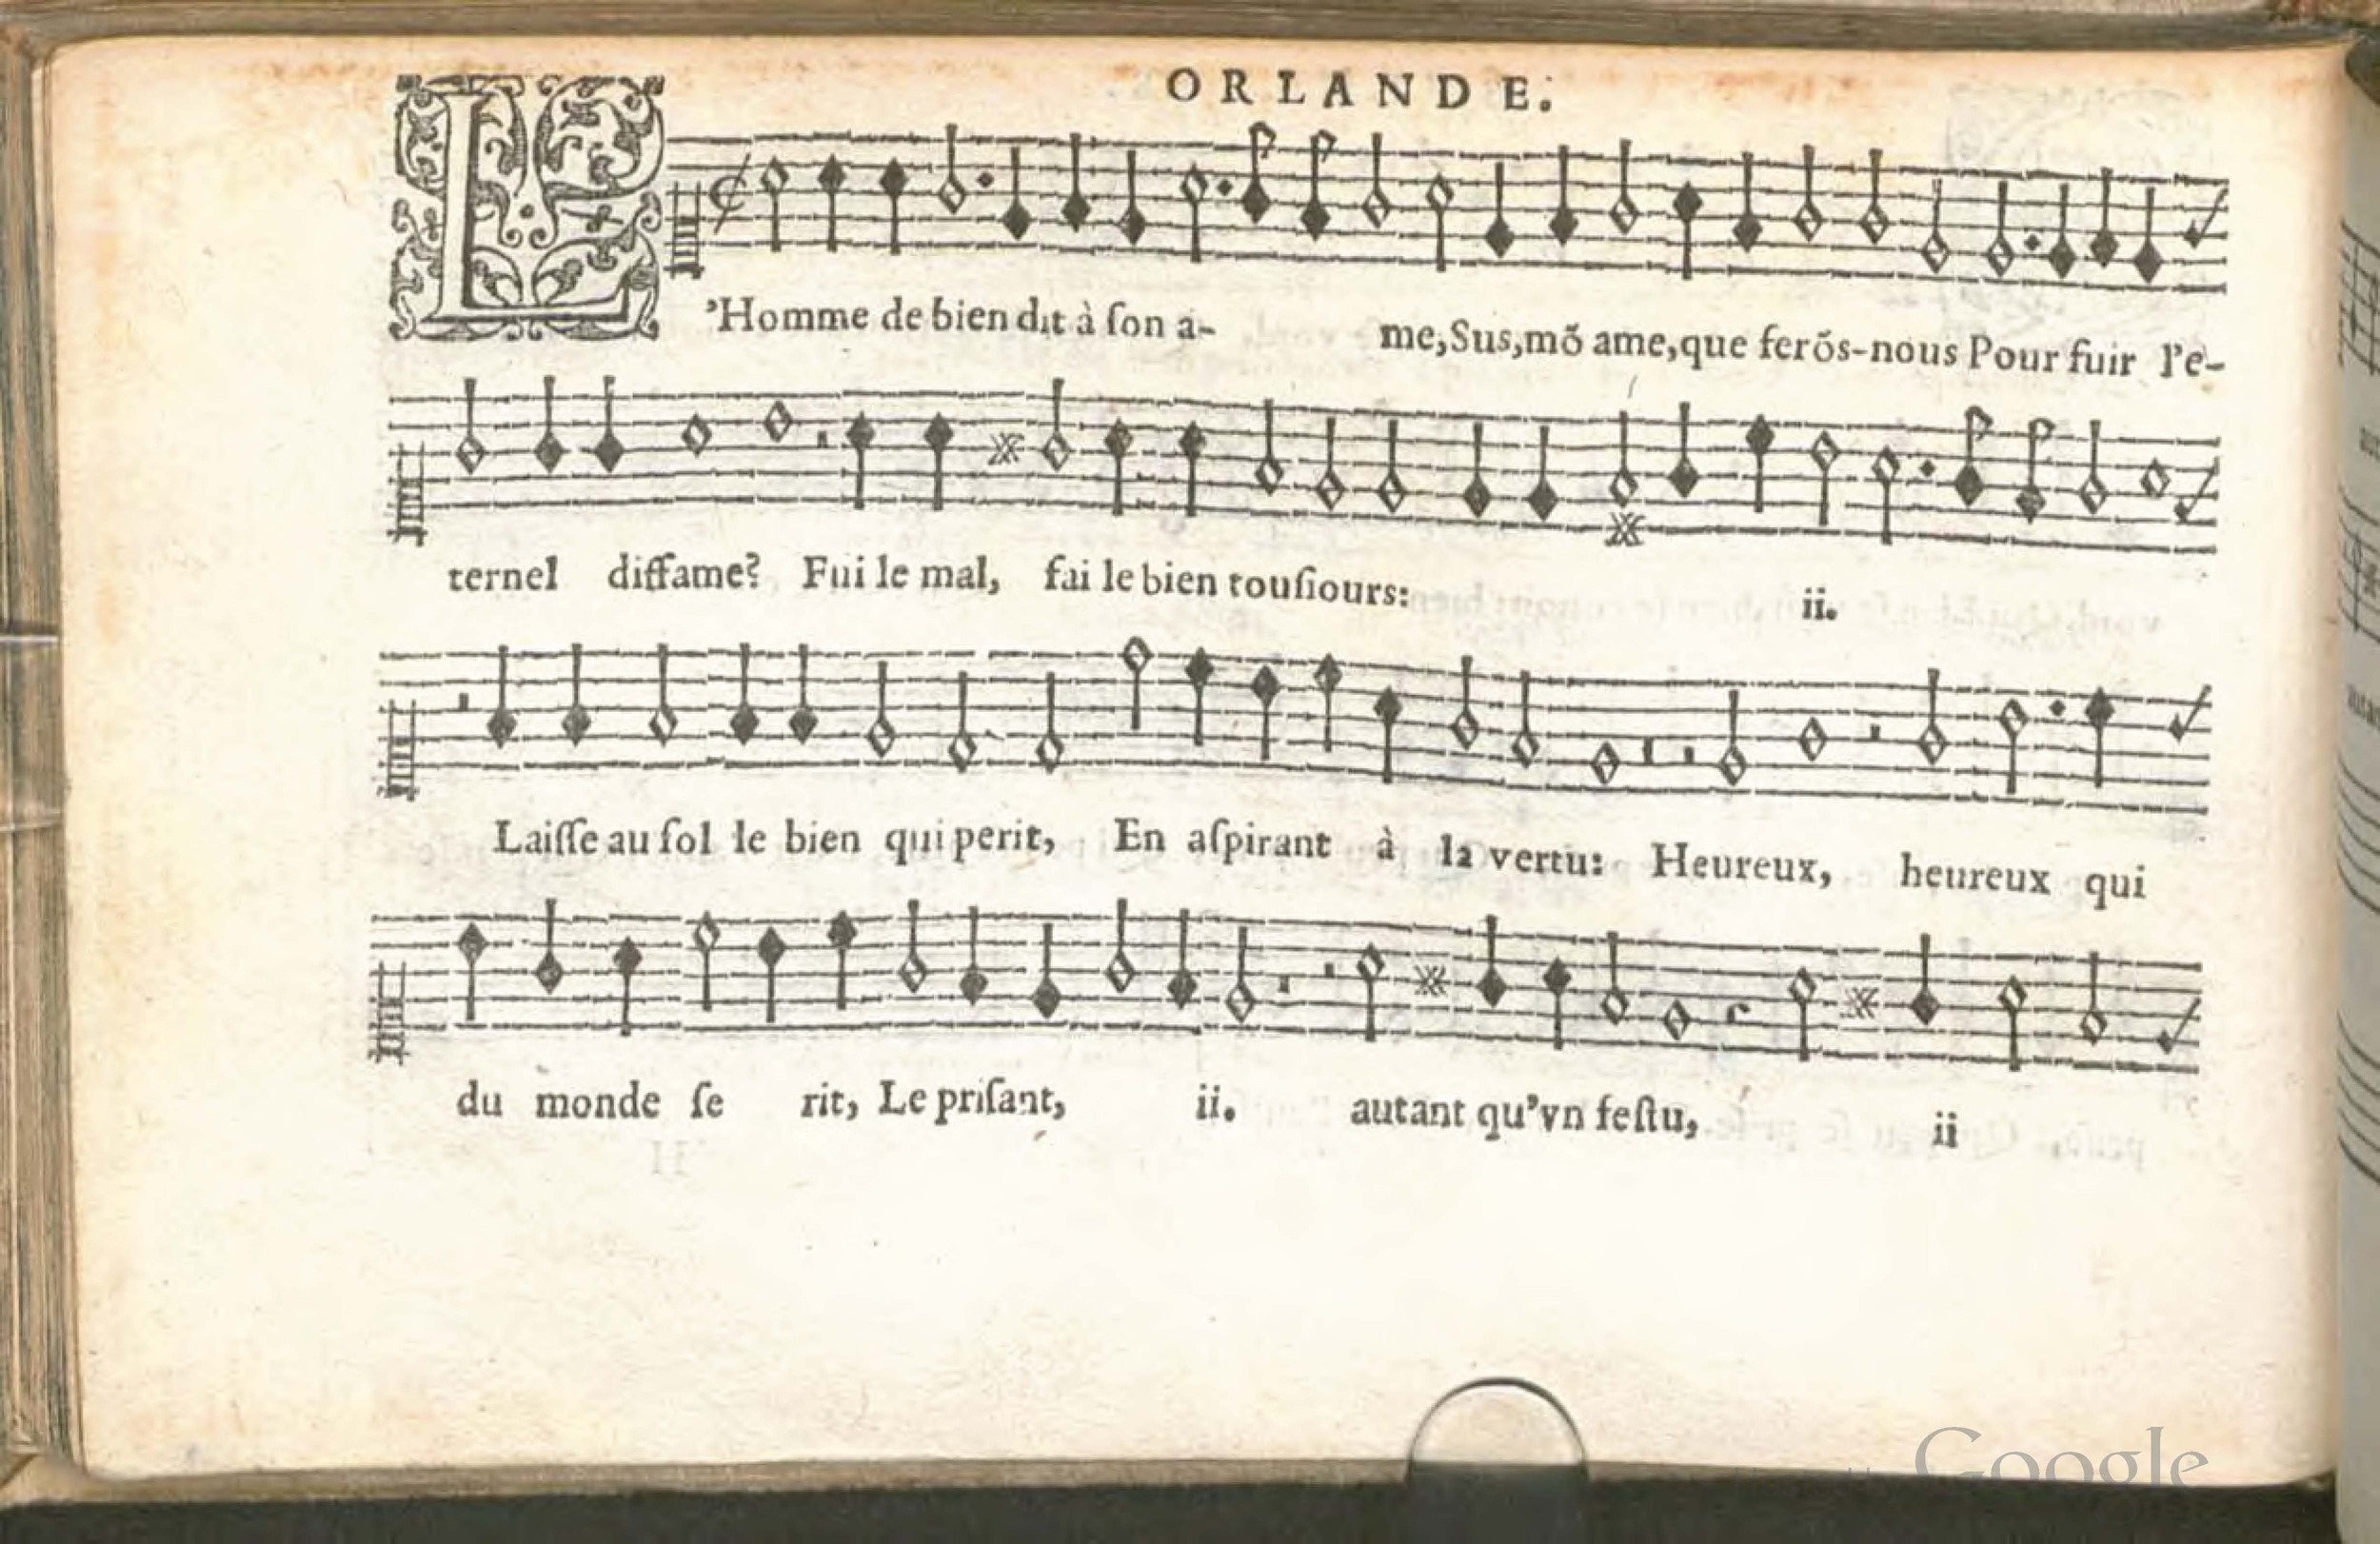 1576 [Pierre de Saint-André] - Trésor de musique Superius - Munich_Page_058.jpg